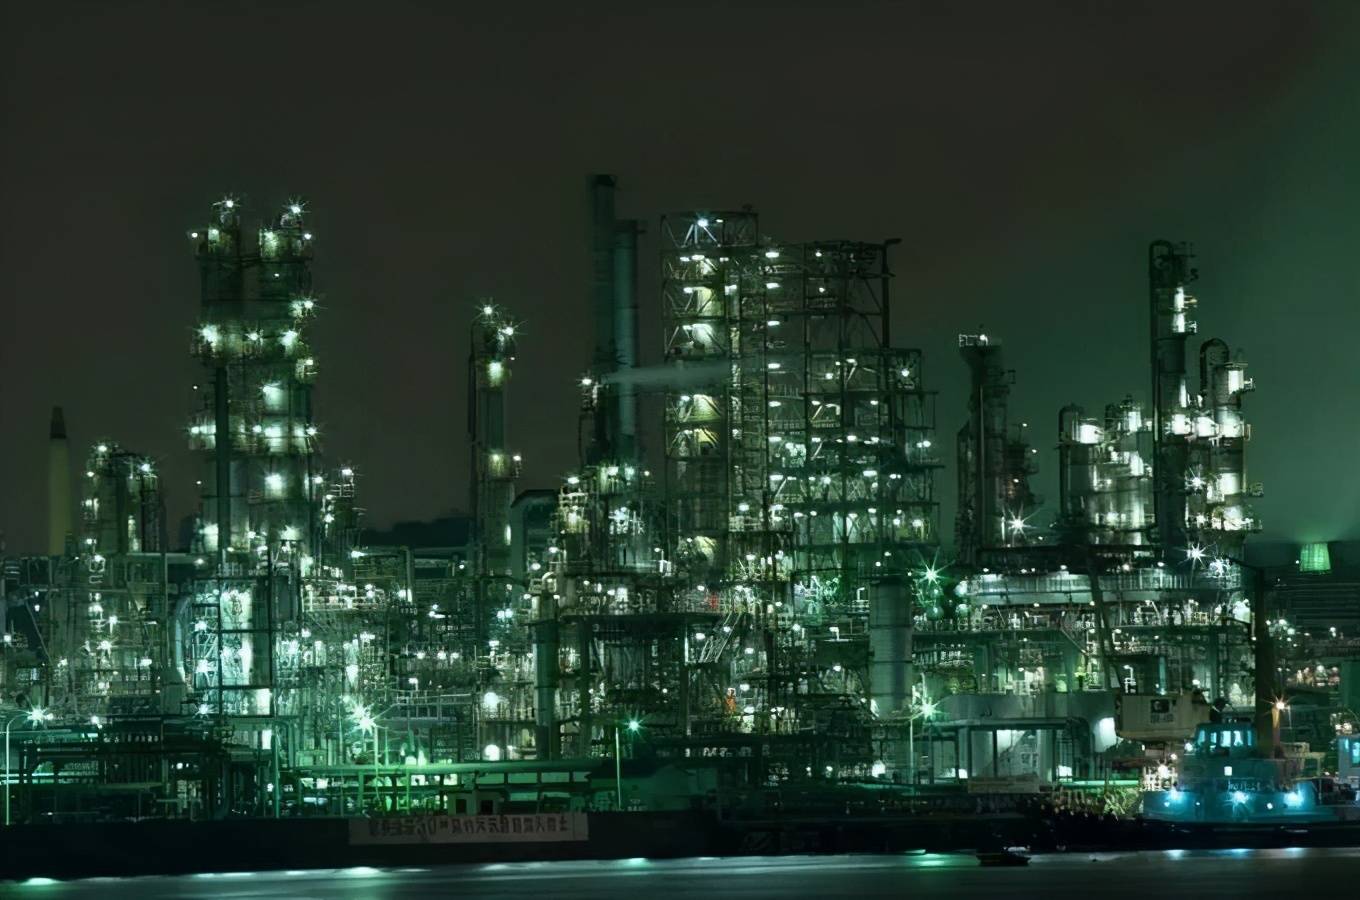 日本工业旅游之夜色工厂 北九州